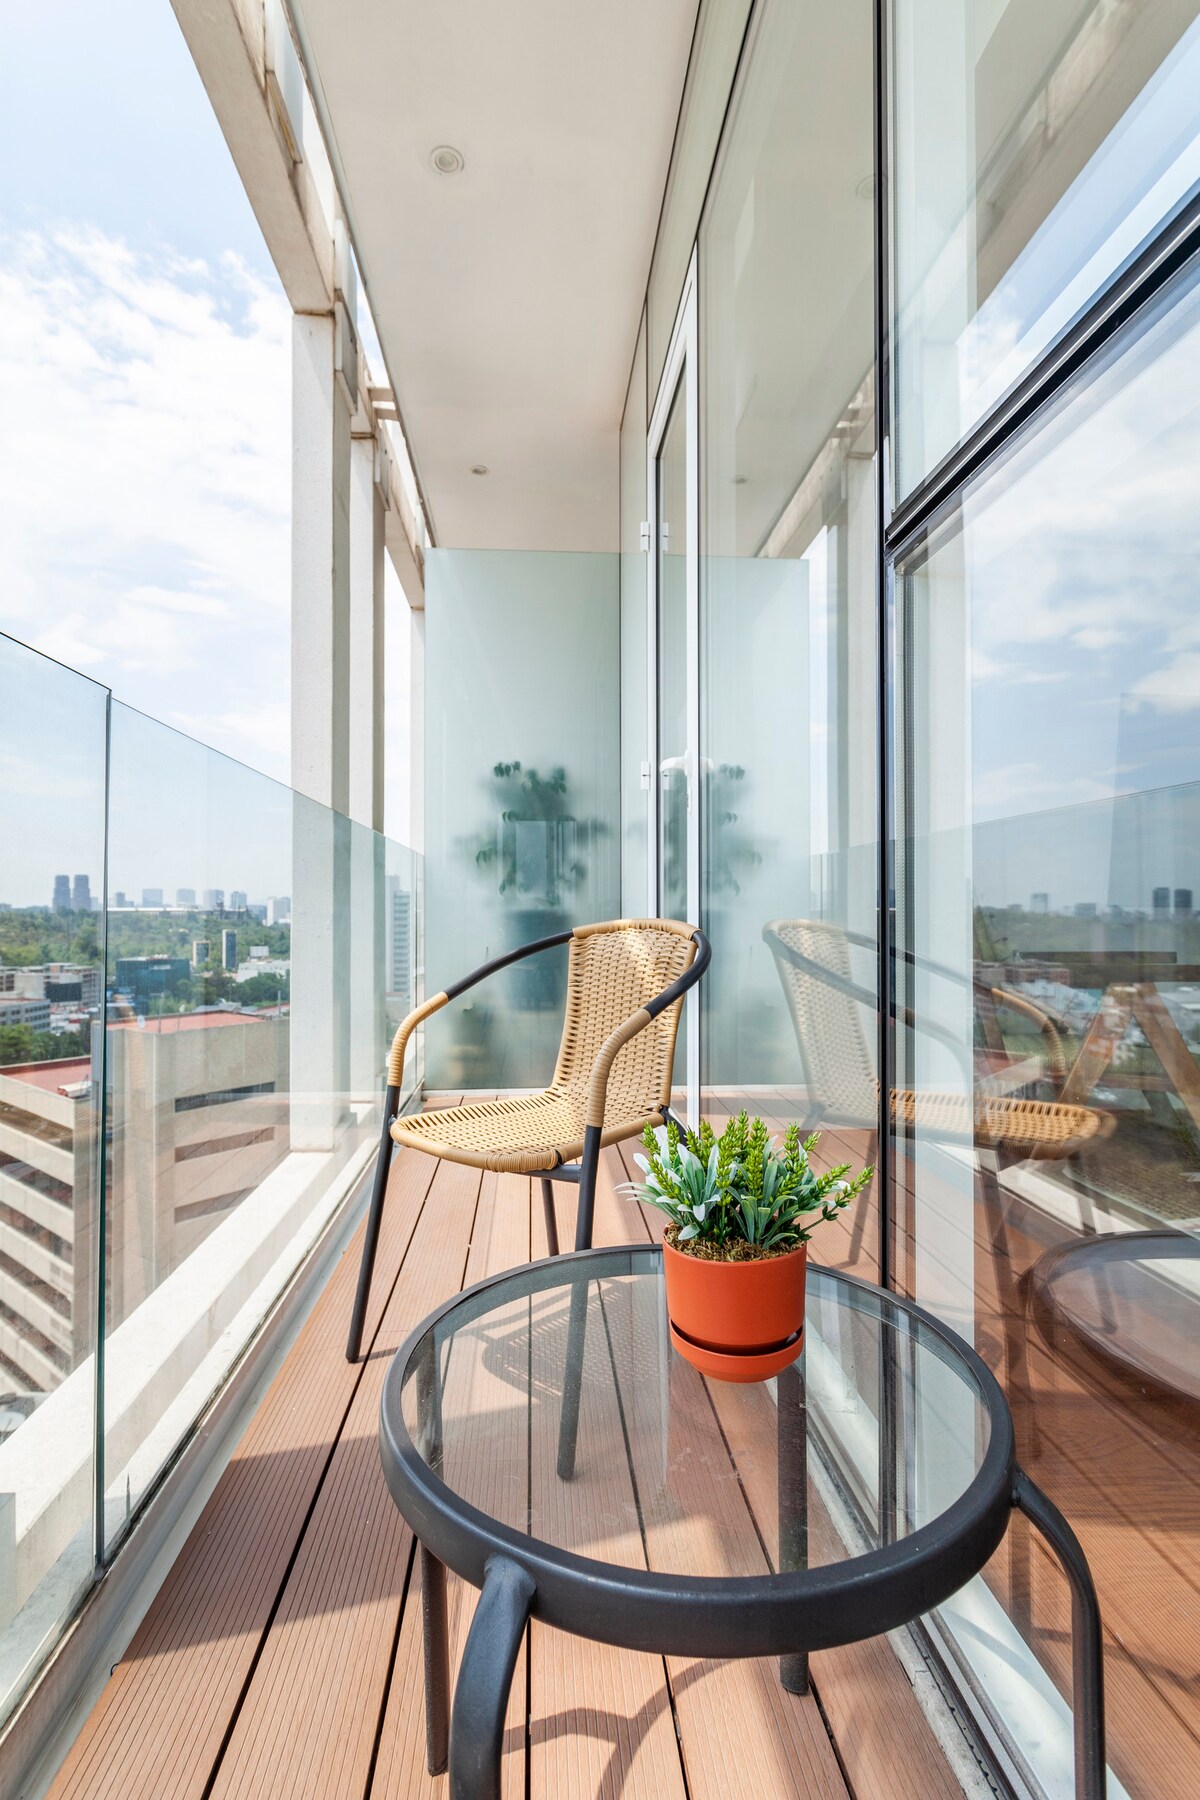 Luxury Hideaway in the Sky #Condesa #Design #Roof